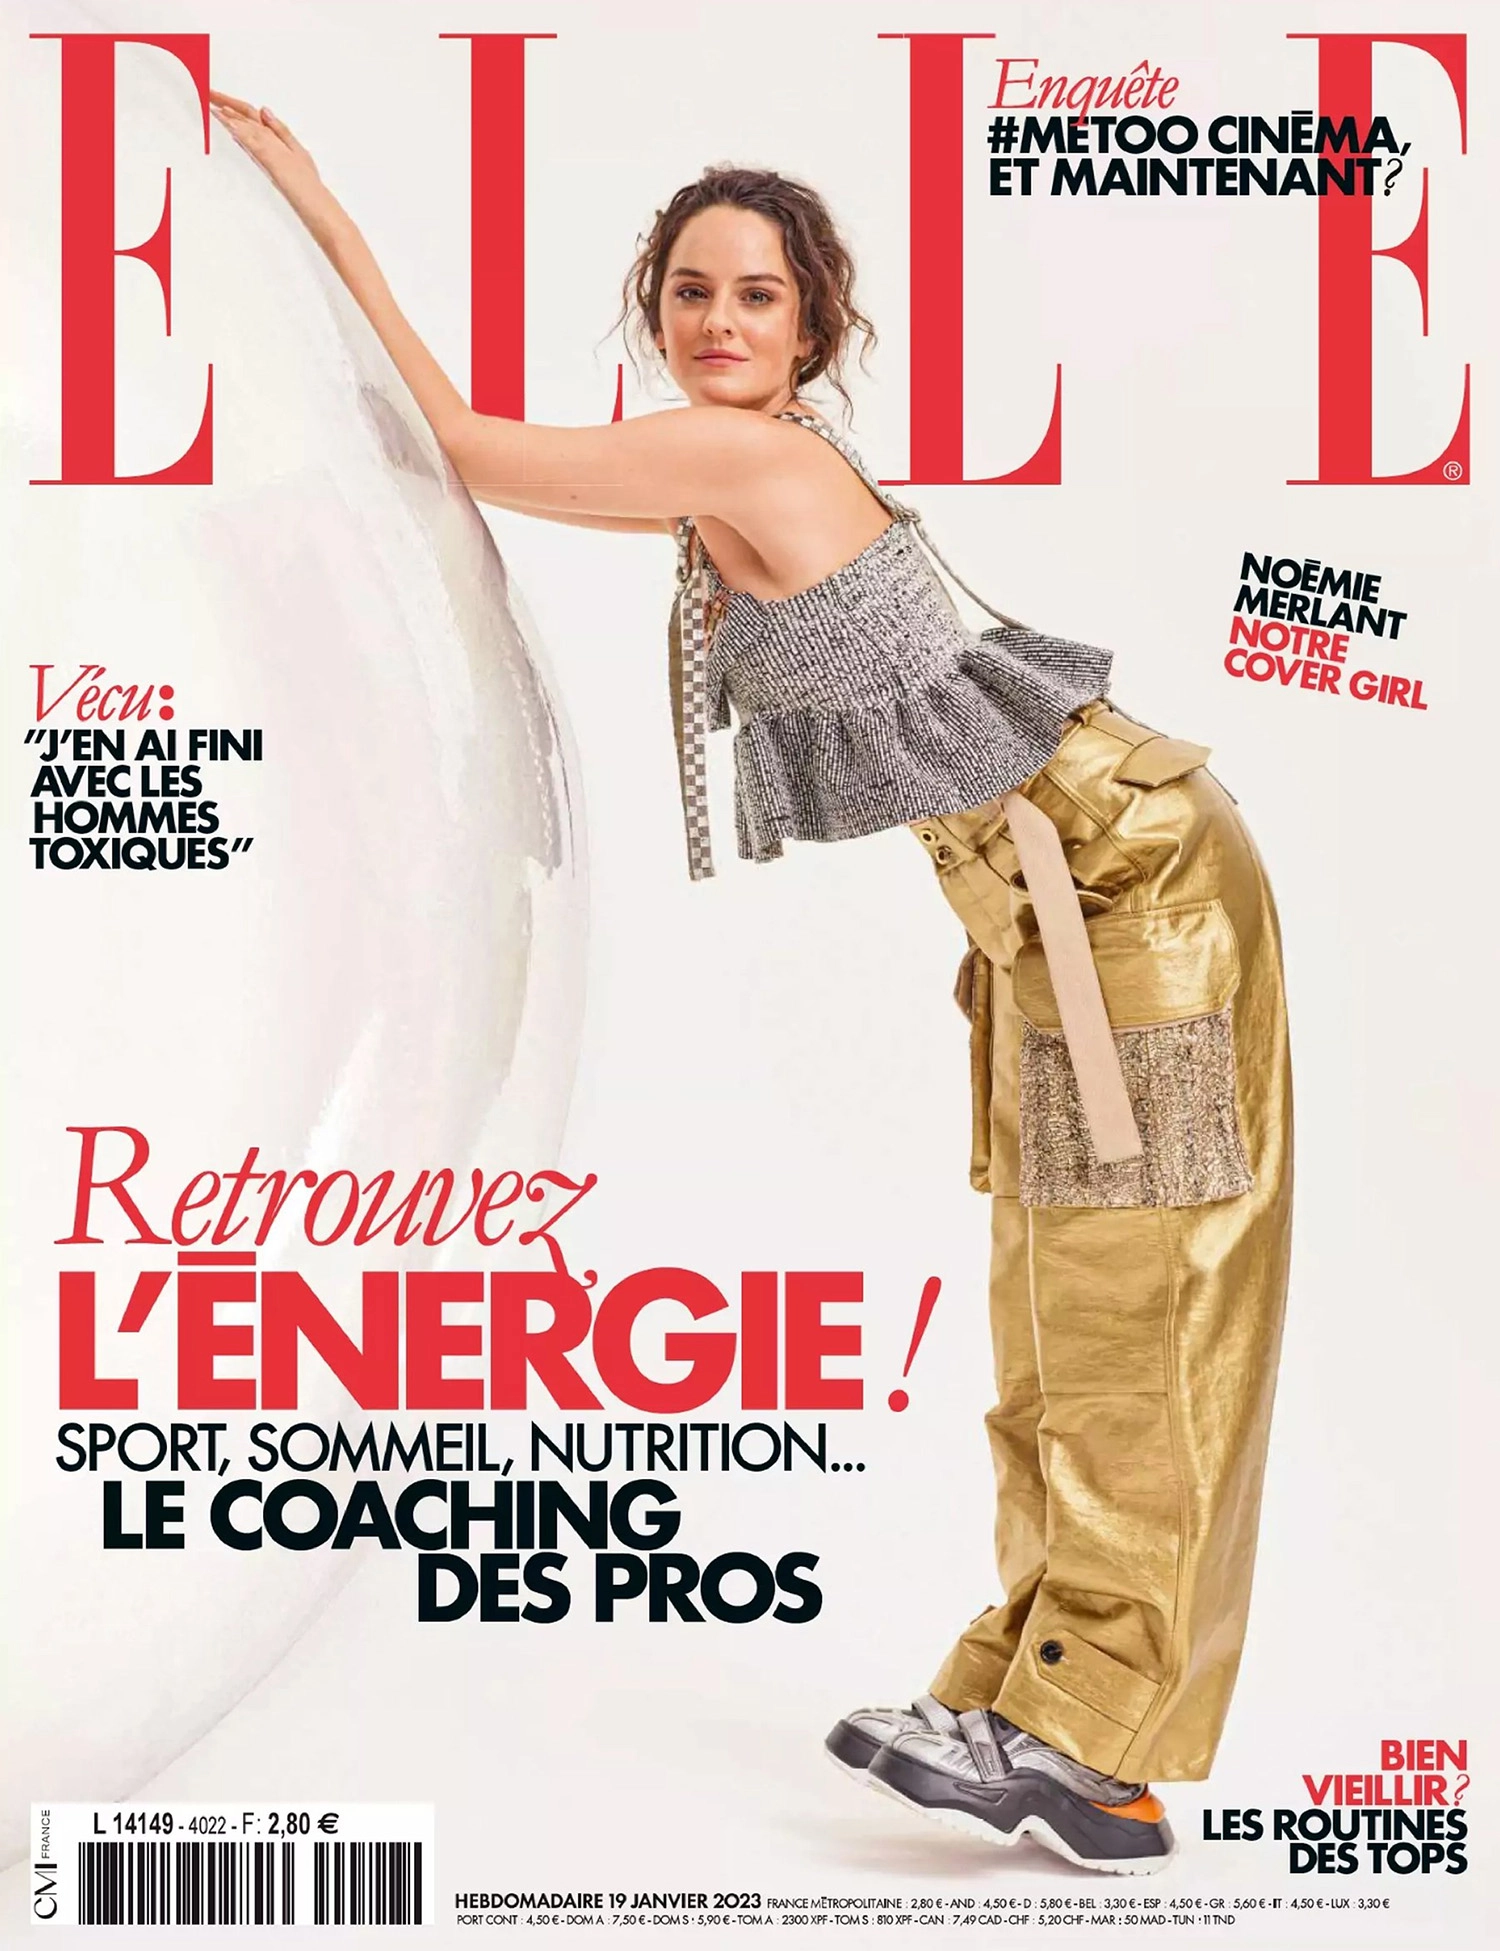 Noemie Merlant Covers Elle France January 19th 2023 By Philippe Jarrigeon 1.webp